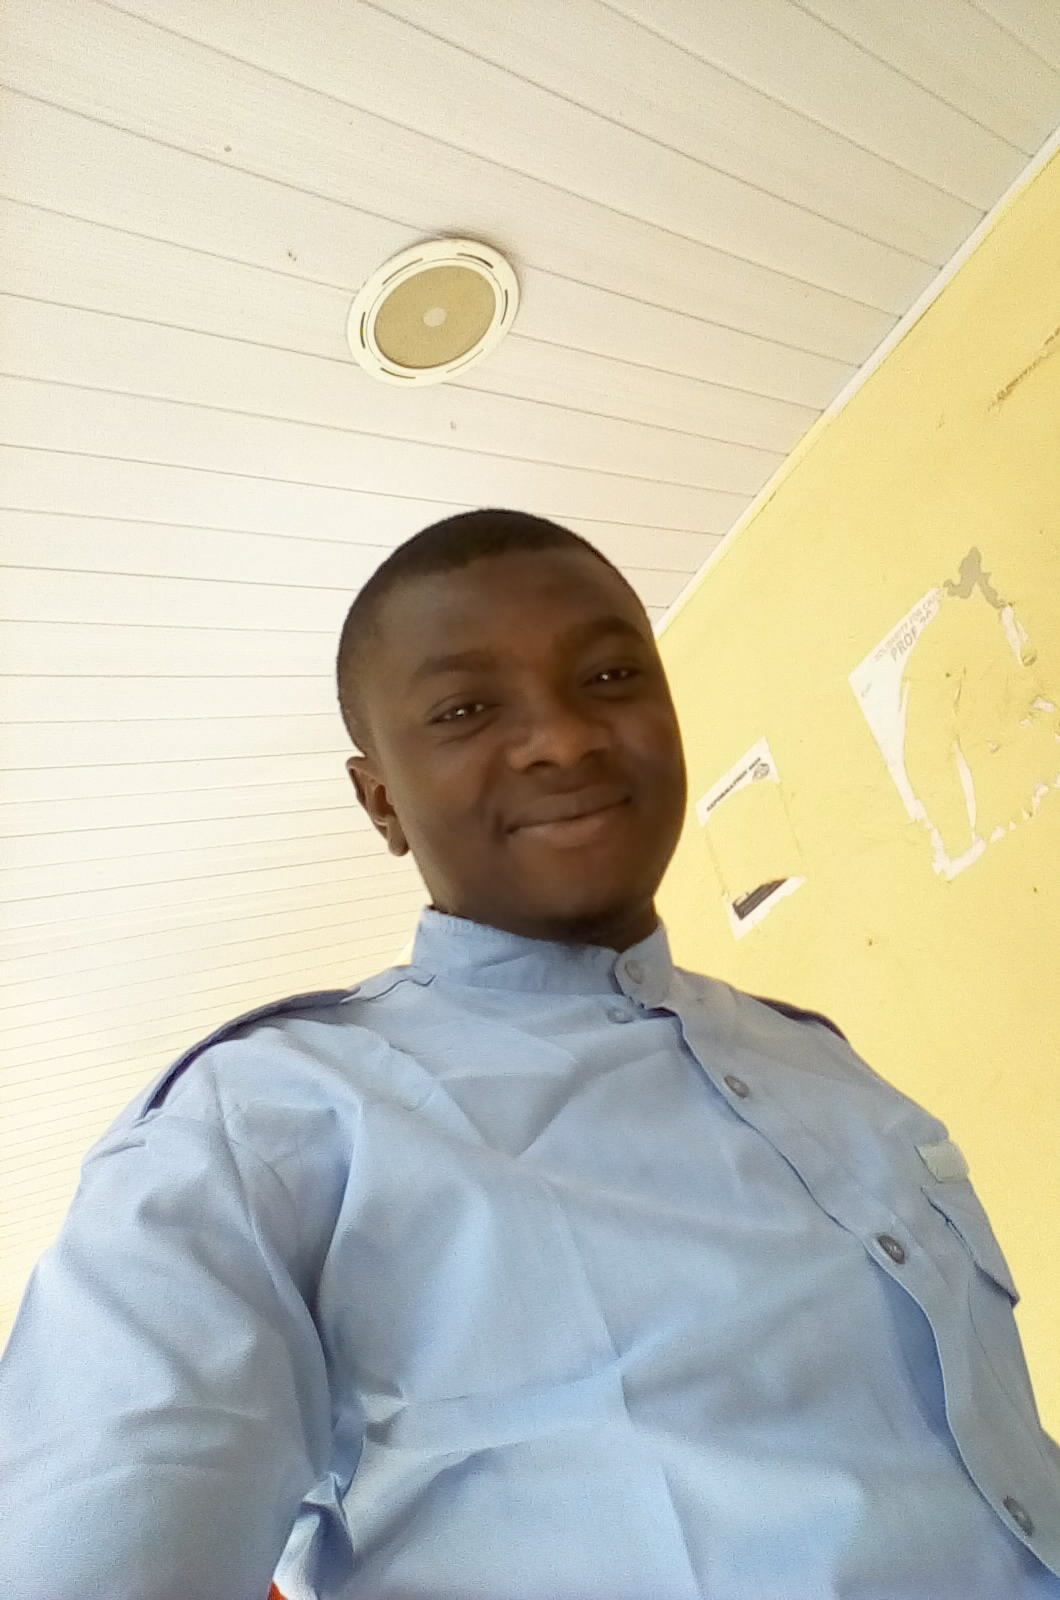 Adegboye Habeeb Oladeji
Gboye Surgical https://t.co/GRylPnmKhe
Kaduna State